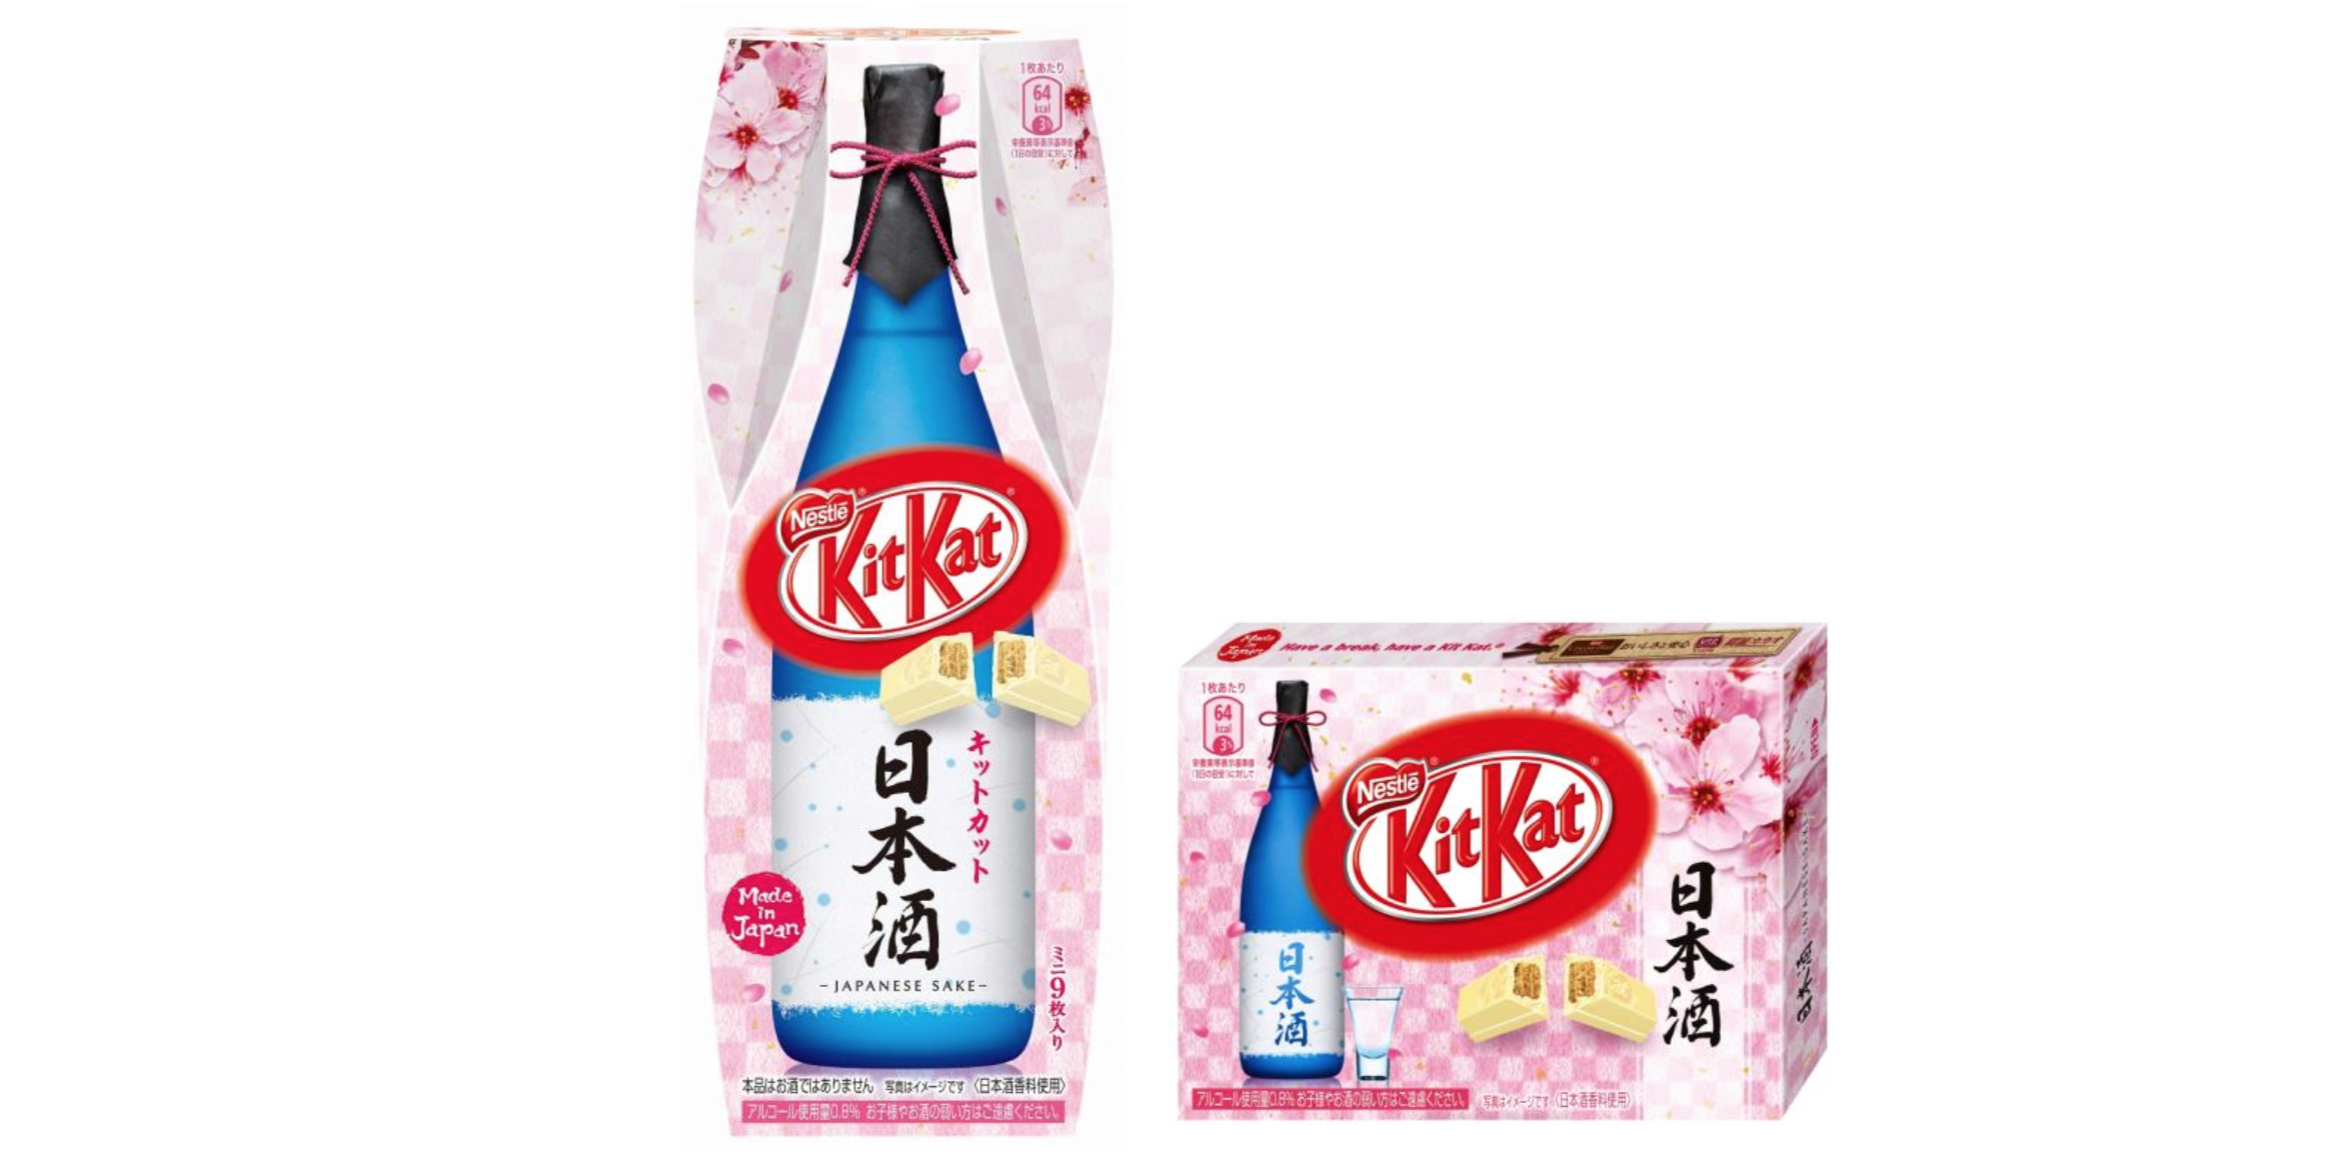 いったいどんな味よ！？キットカットがなんと日本酒の香りと味わいを再現した日本酒味を発売